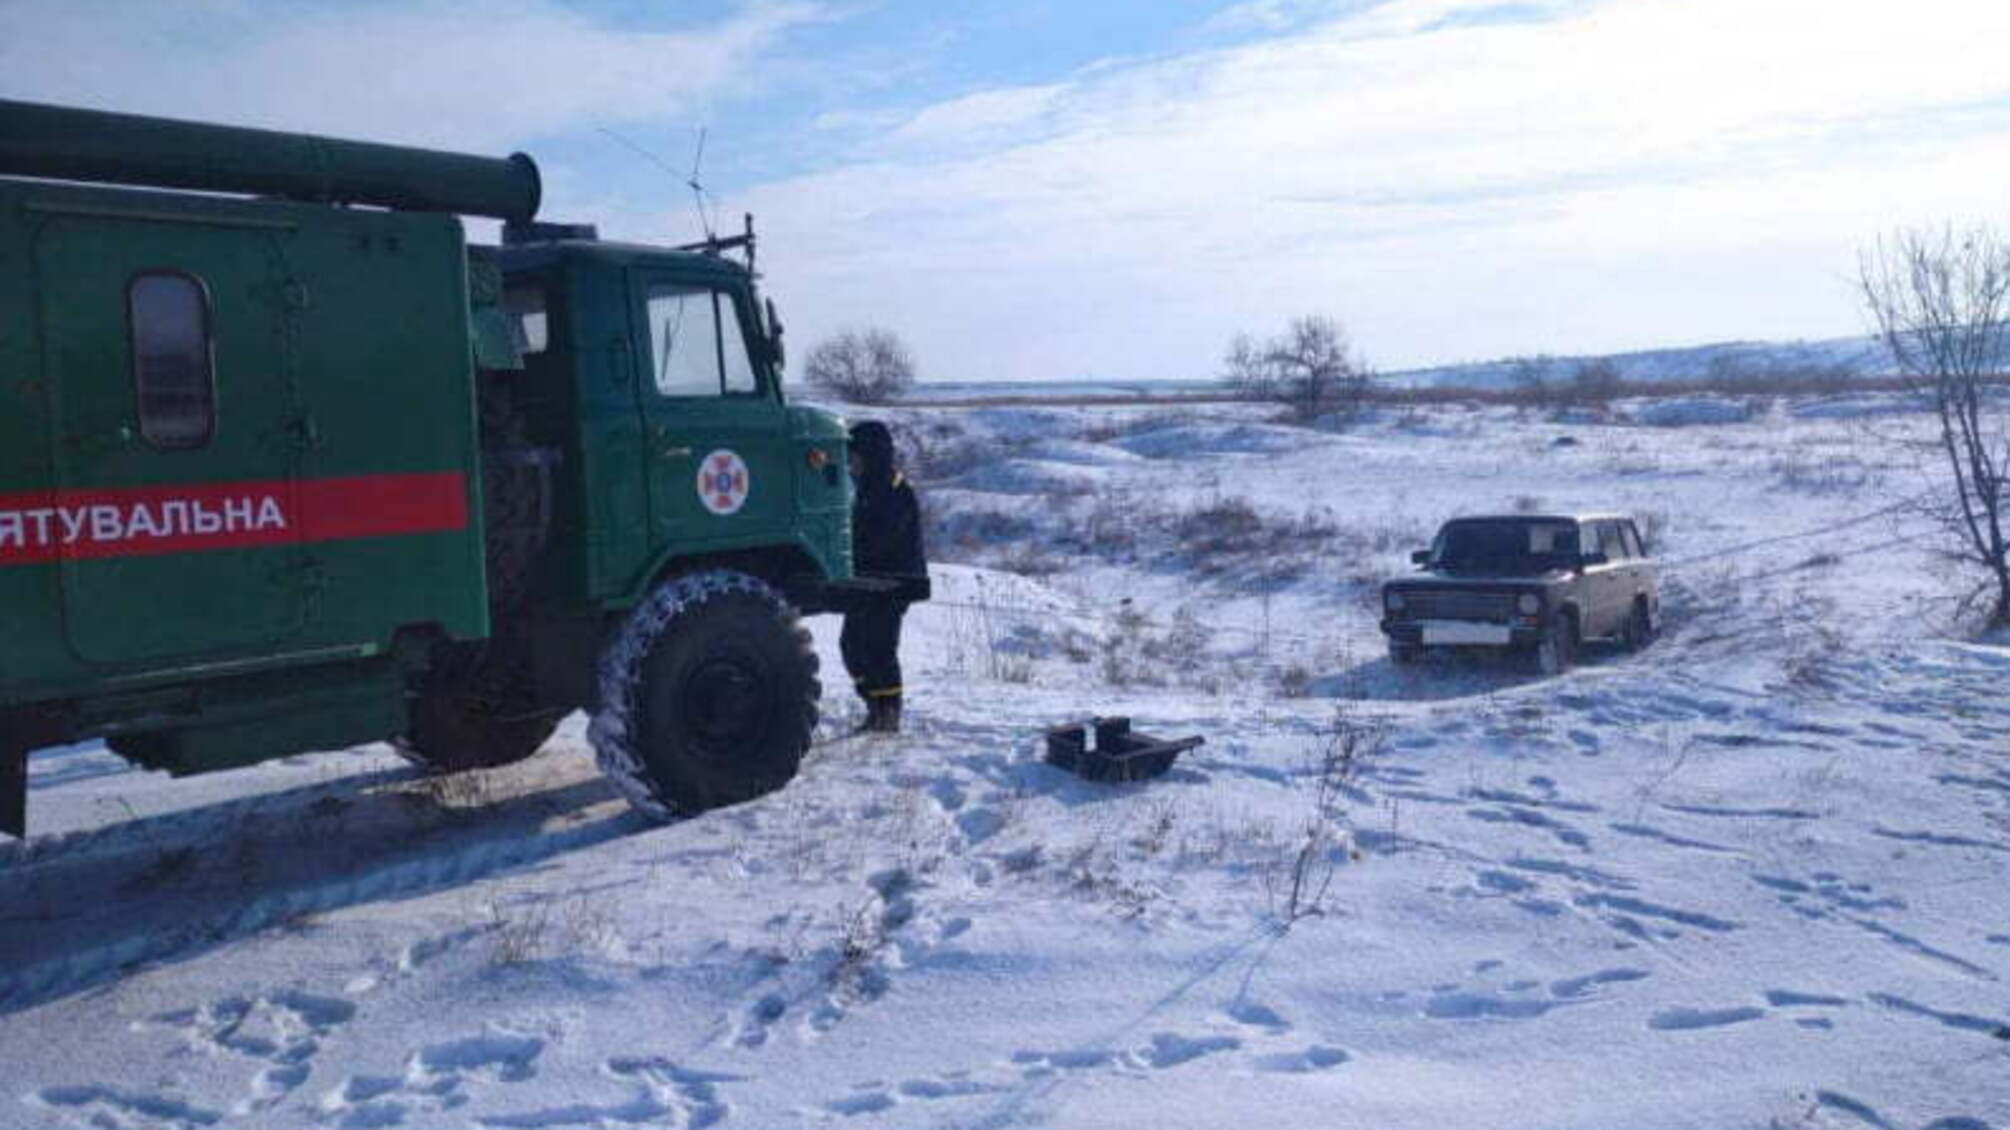 Миколаївська область: рятувальники витягли автомобіль із кювету